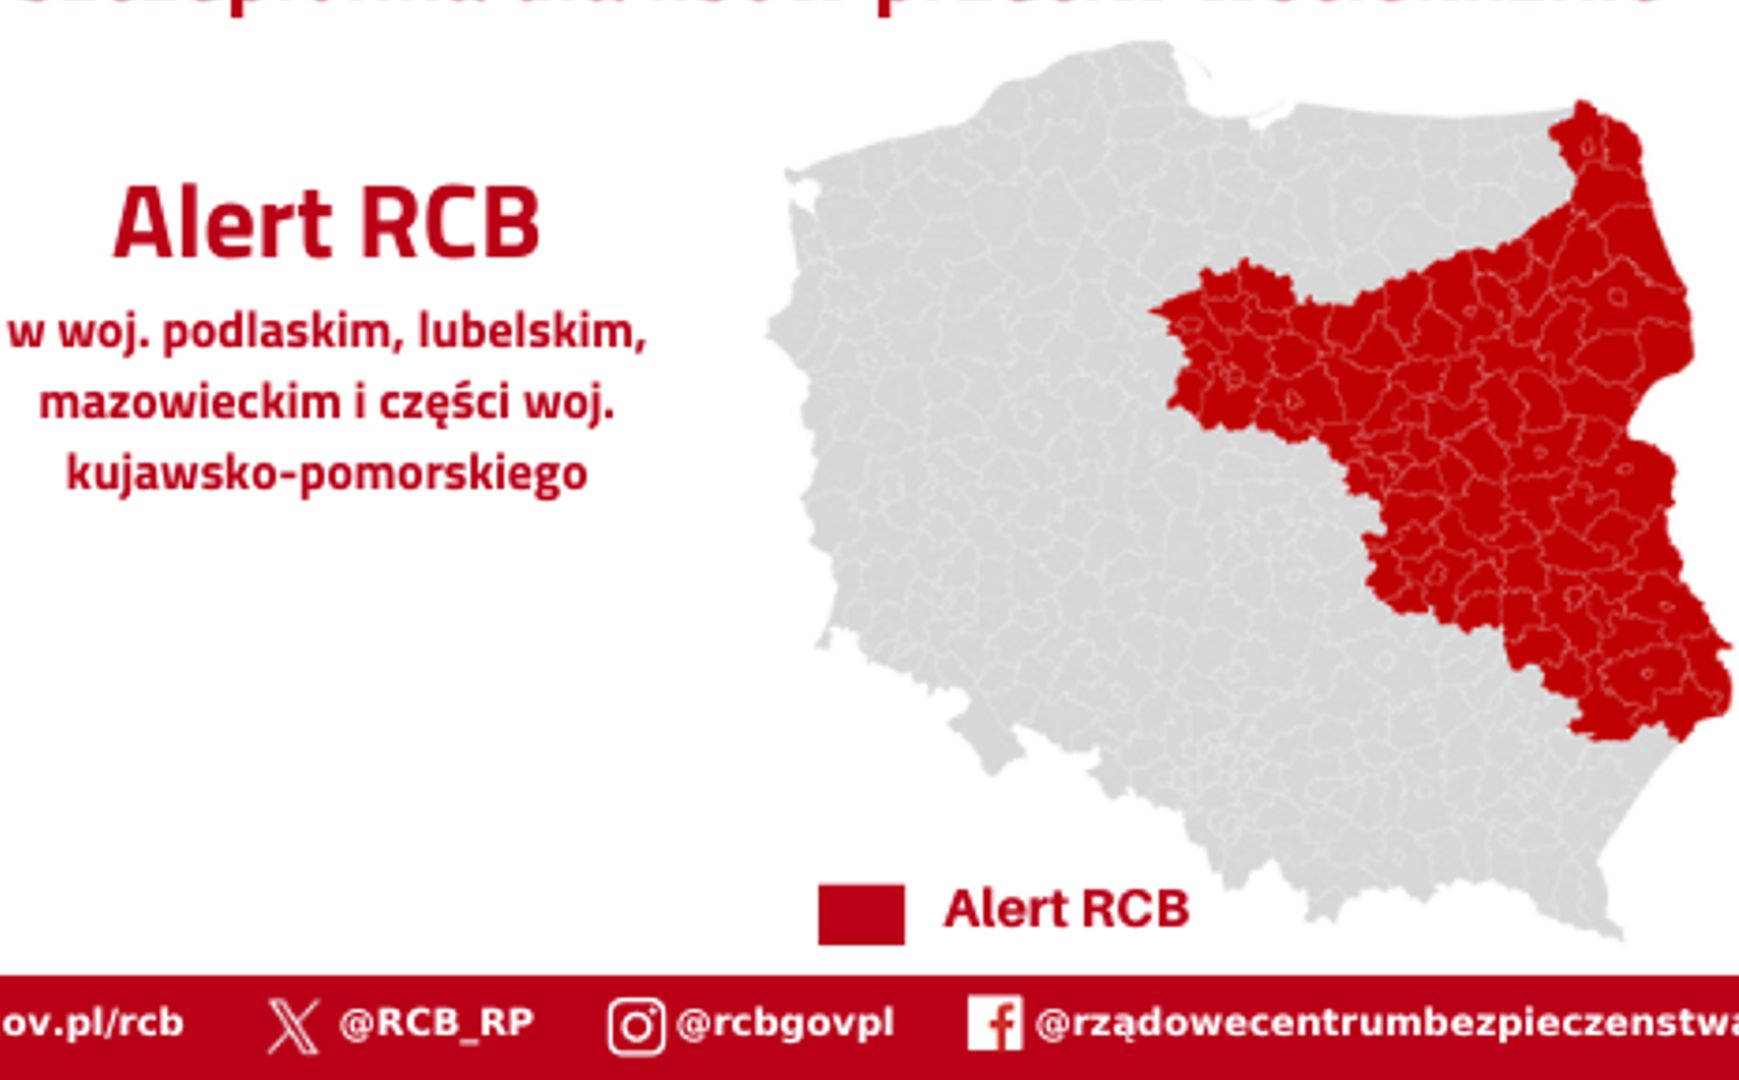 Alert RCB dla wschodniej części Polski. Jutro zaczną się zrzuty